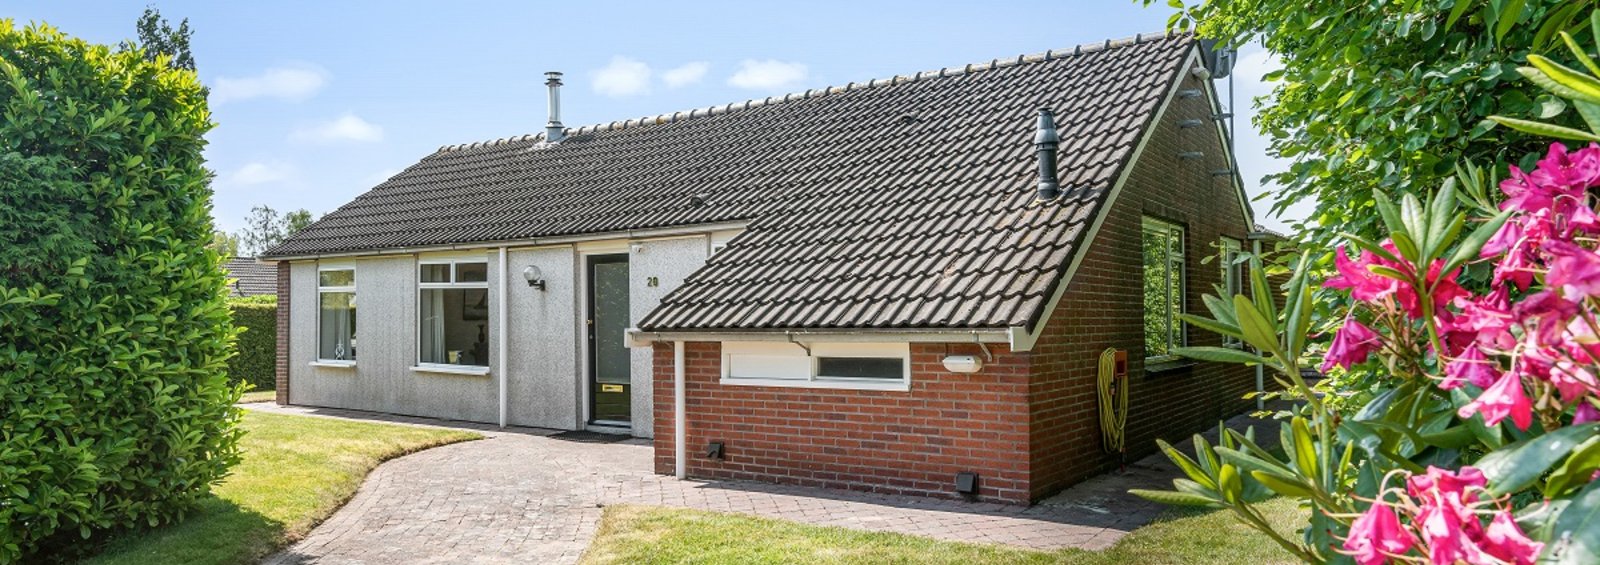 Vrijstaand vakantiehuis direct aan het water in Friesland